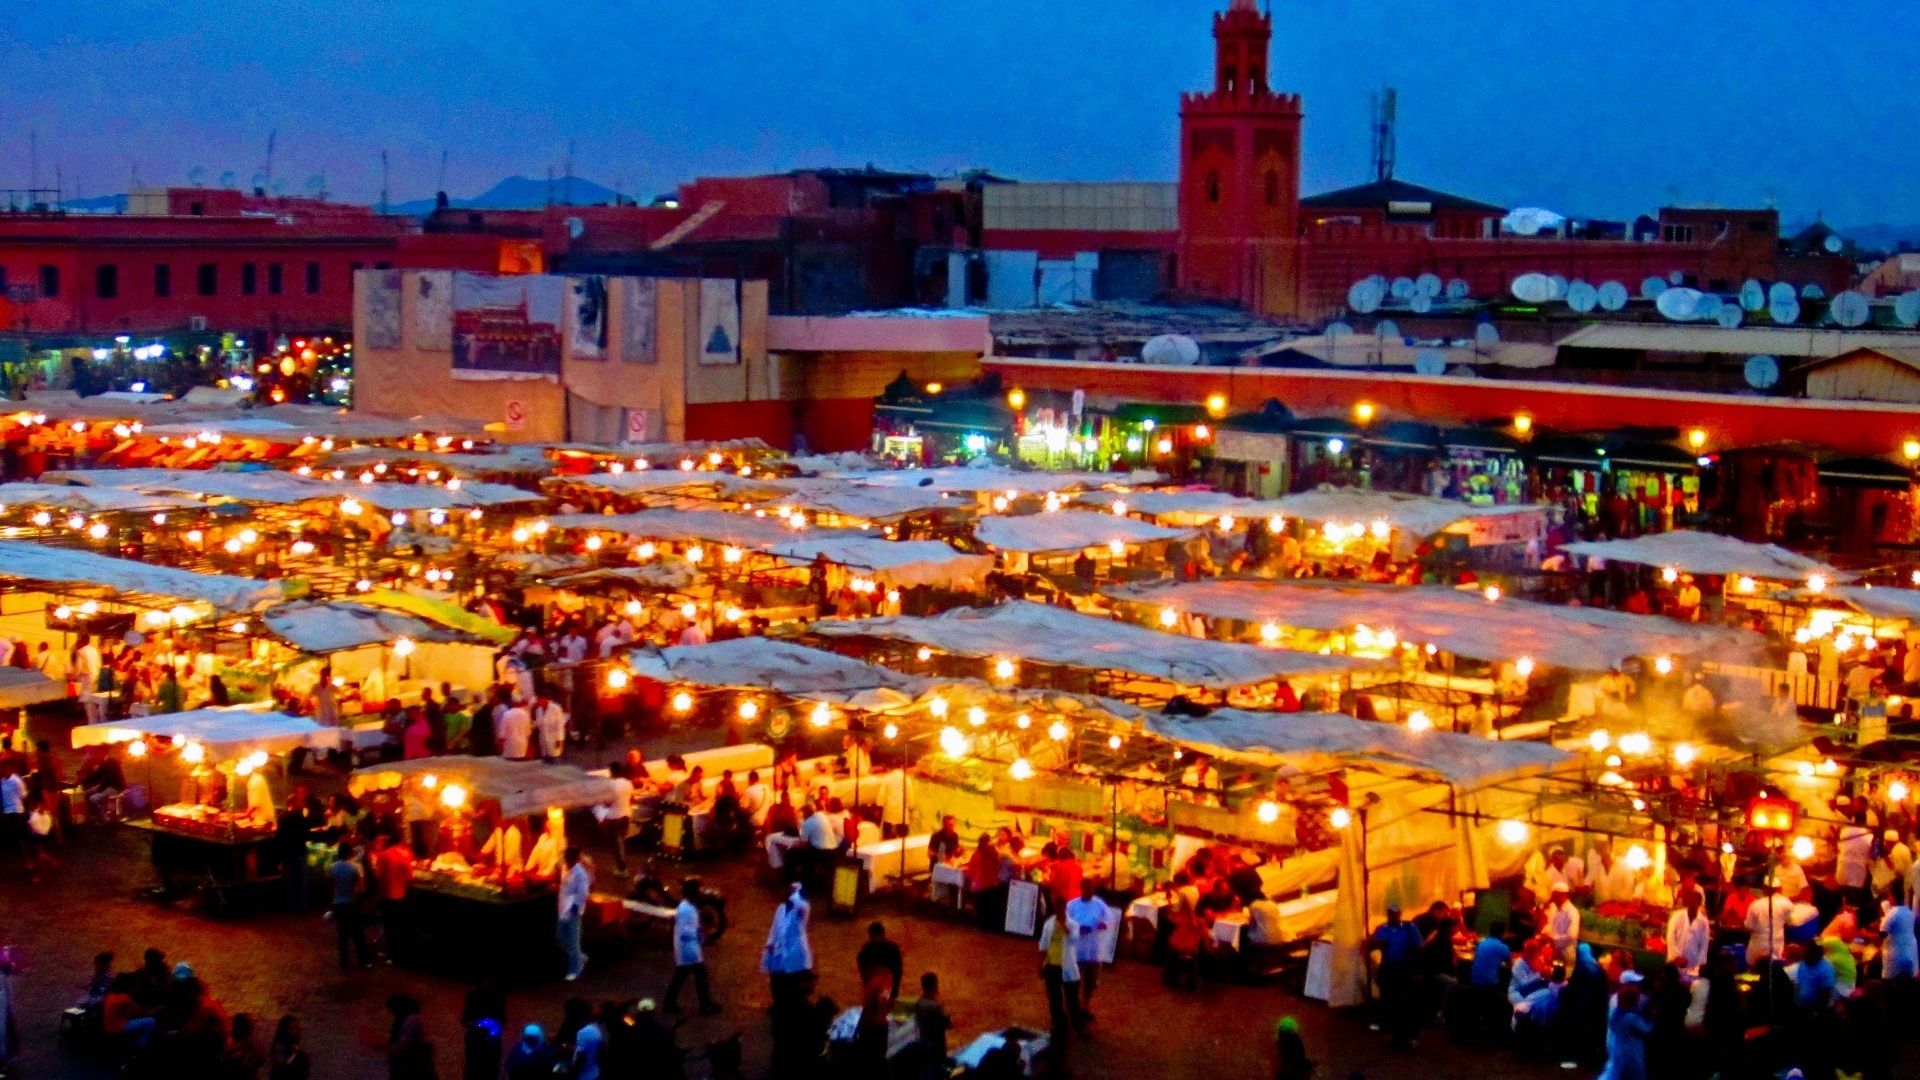 بازار پرجمعیت مراکش در شب با چراغانی های چشمگیر